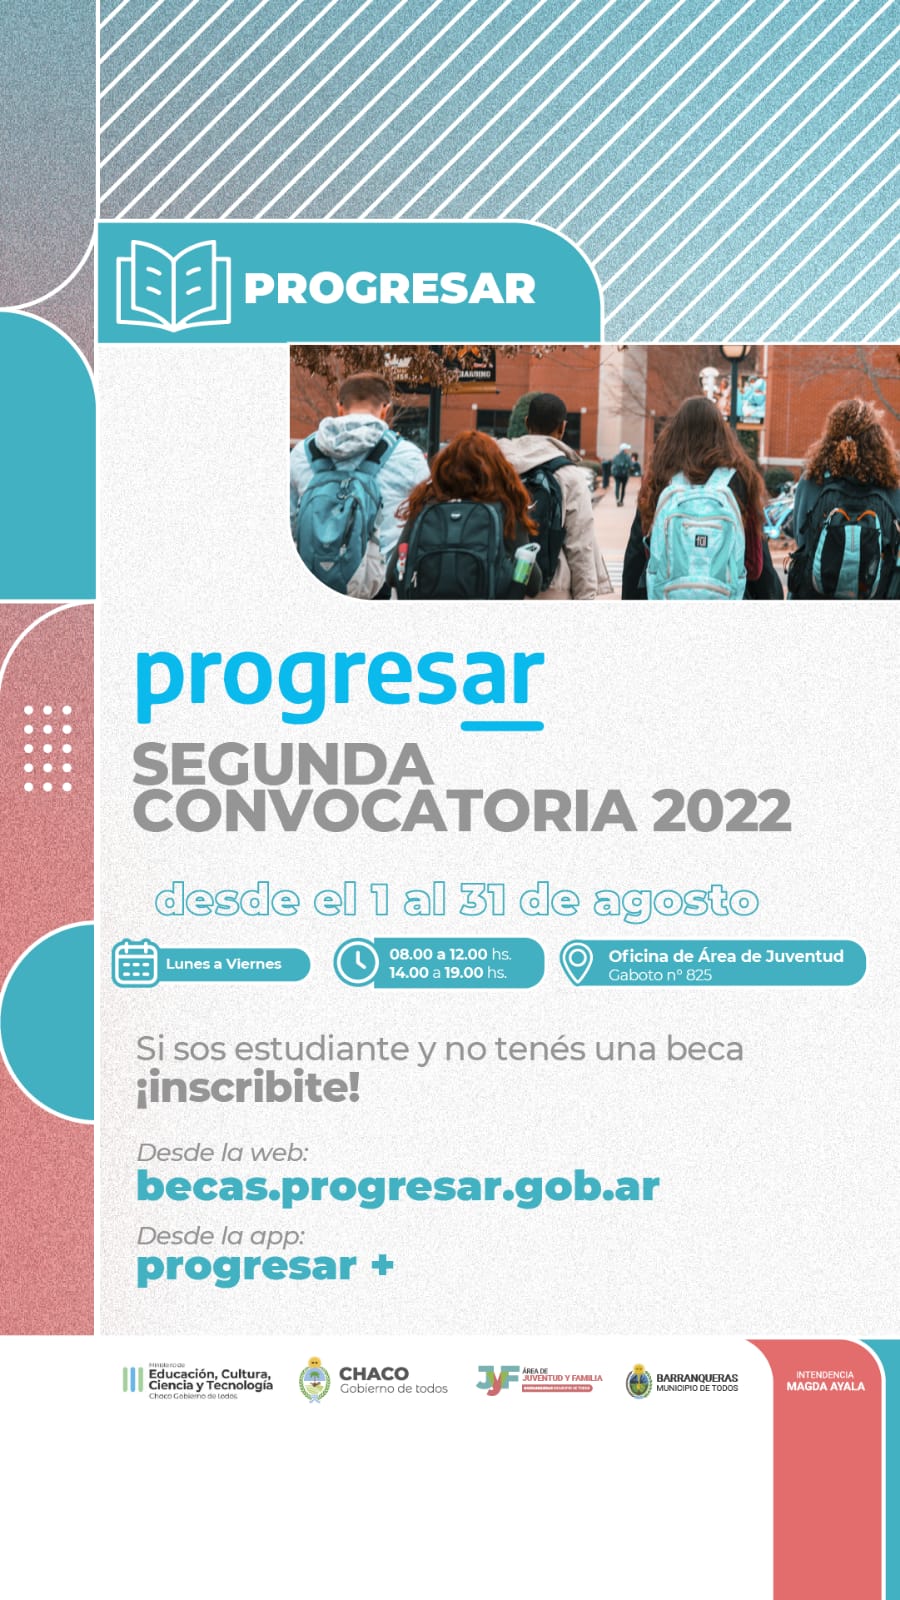 Nueva inscripción para Becas Progresar para estudiantes de Barranqueras